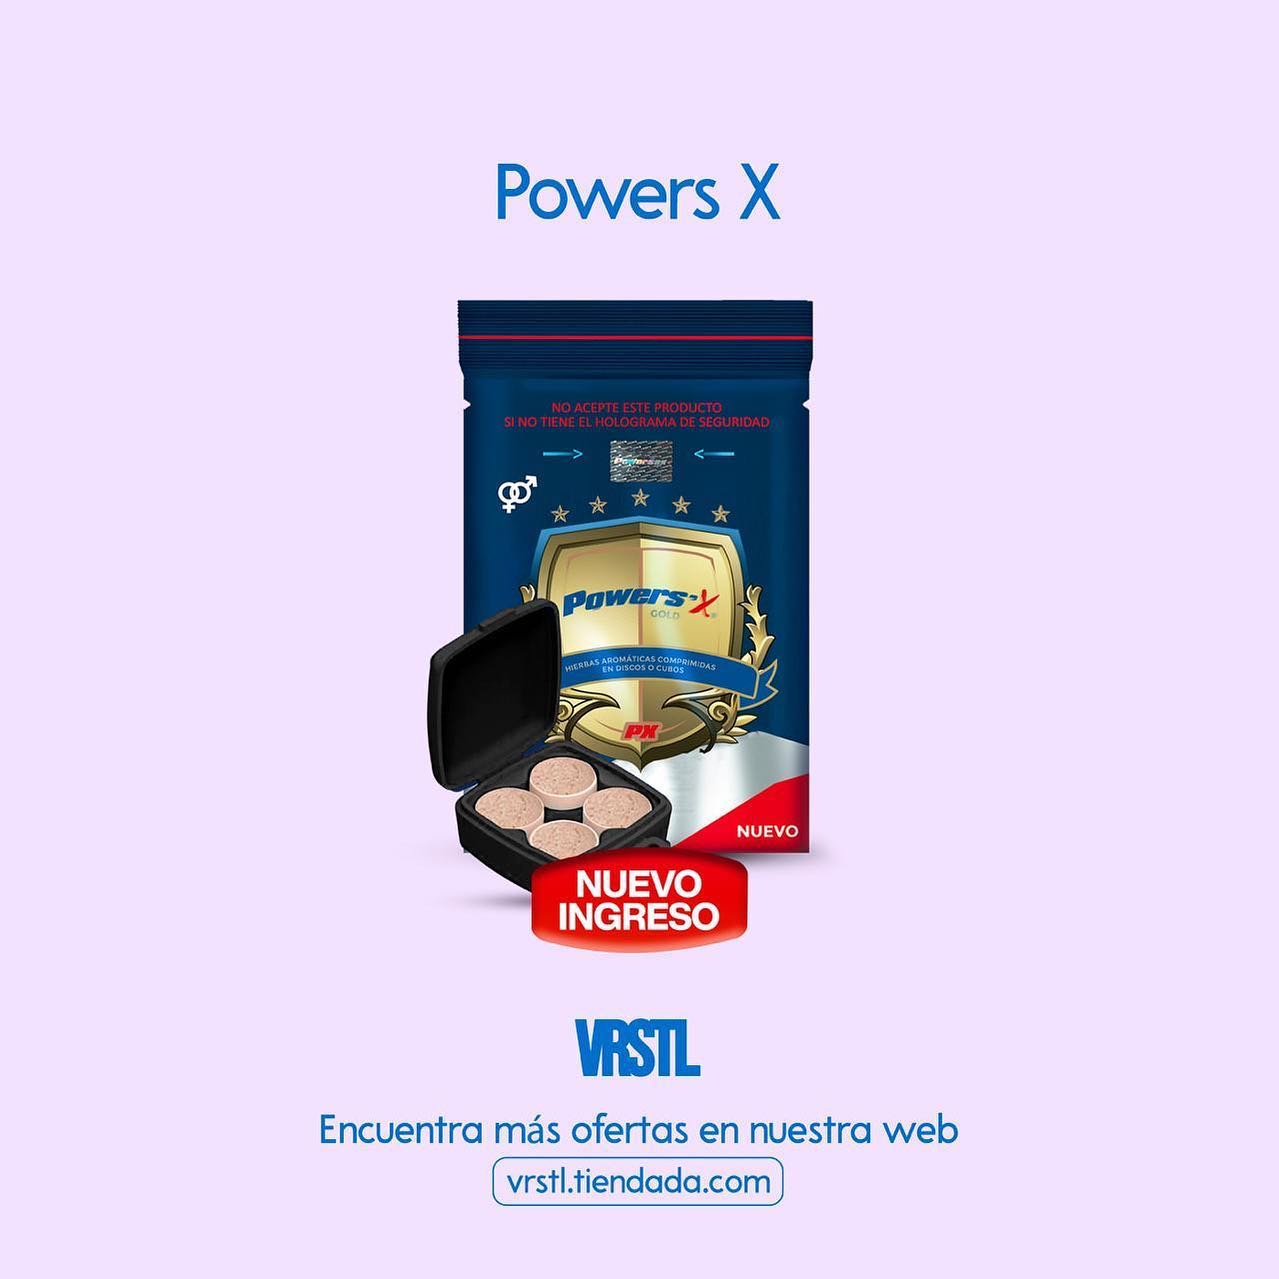 Powers X